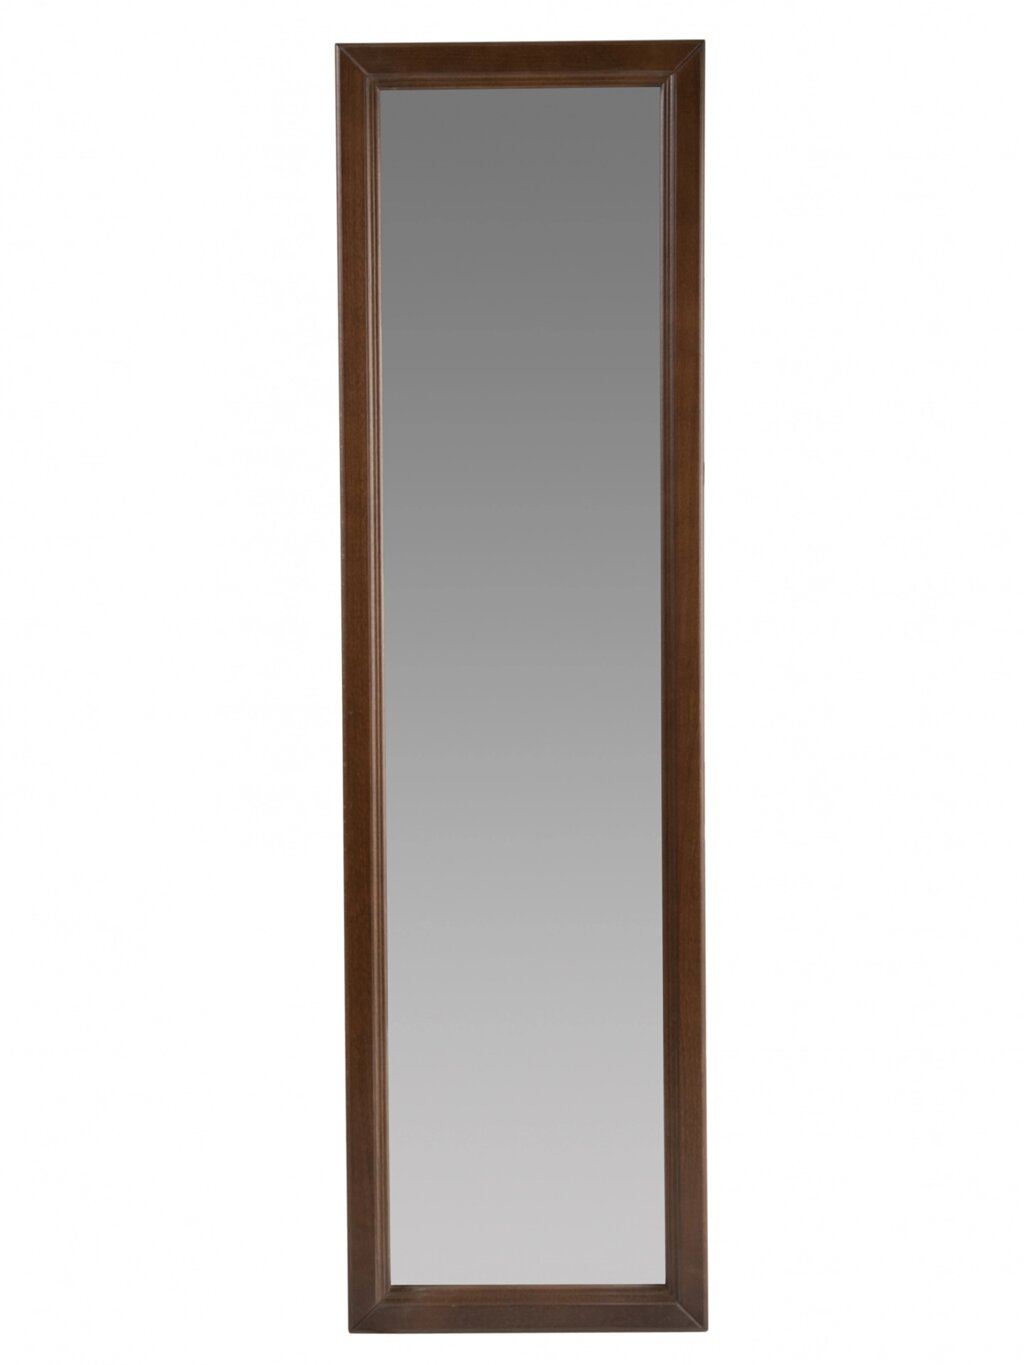 Зеркало настенное Селена 1 средне-коричневый 119 см х 33 | 5 см от компании M-Lion мебель - фото 1